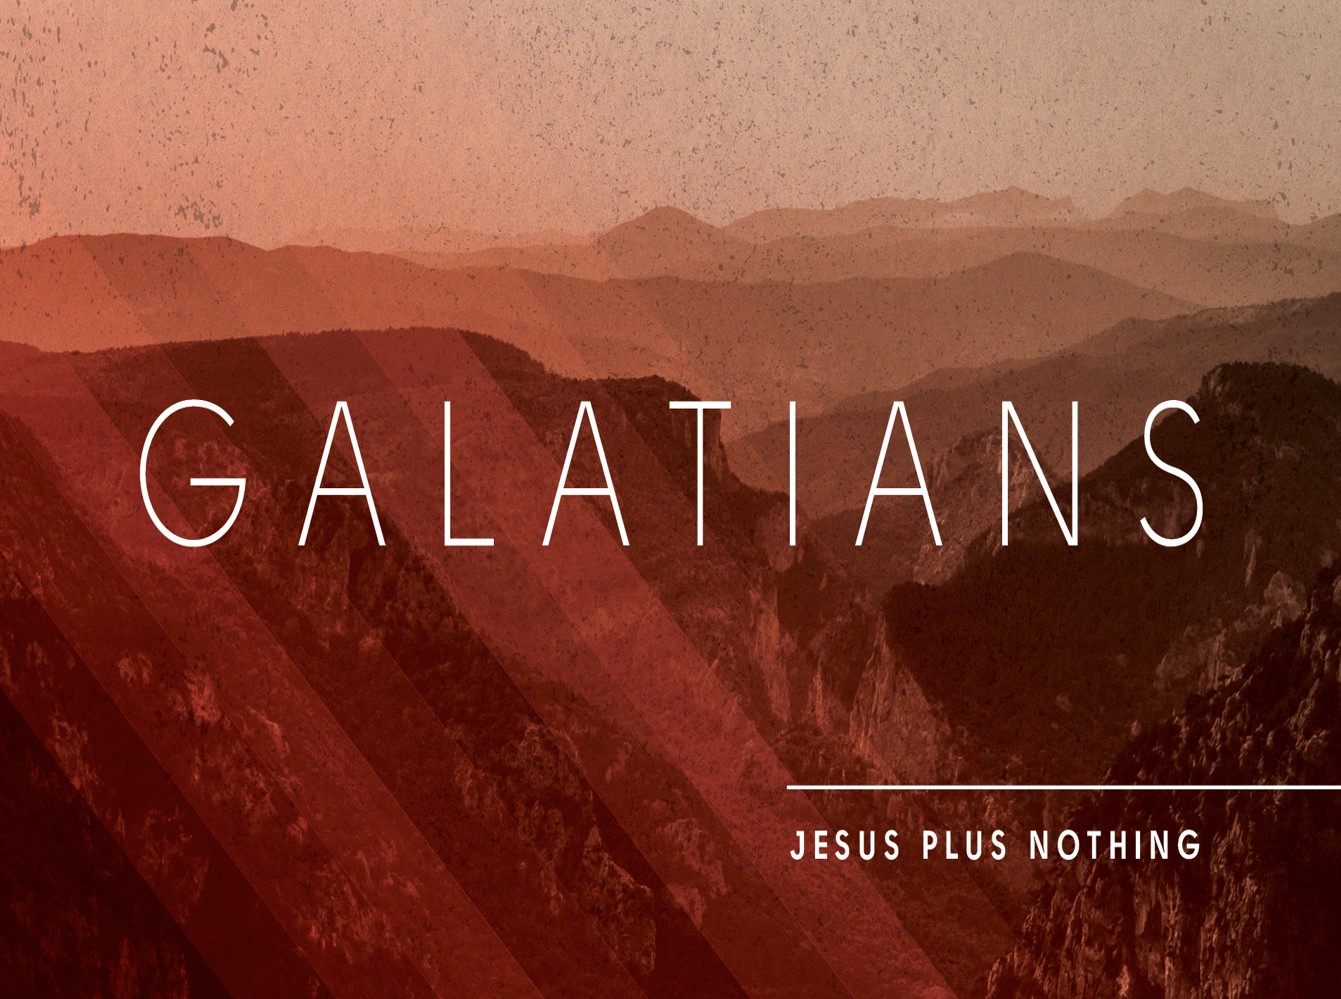 Galatians 1:6-10